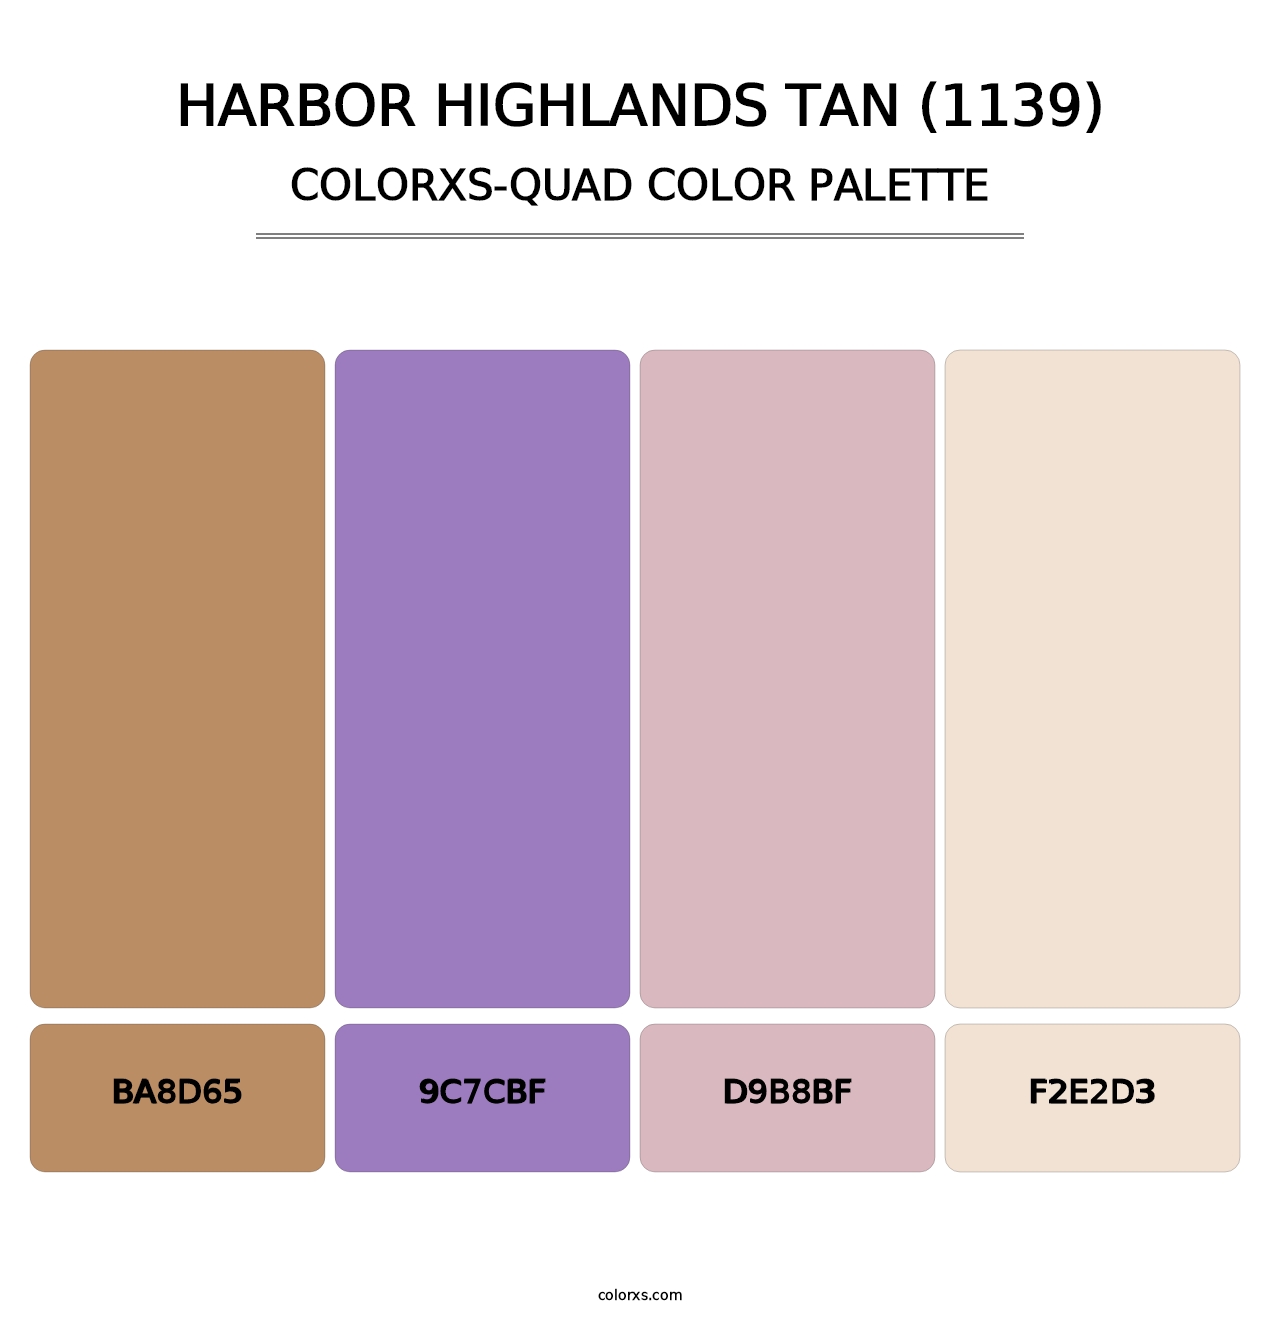 Harbor Highlands Tan (1139) - Colorxs Quad Palette